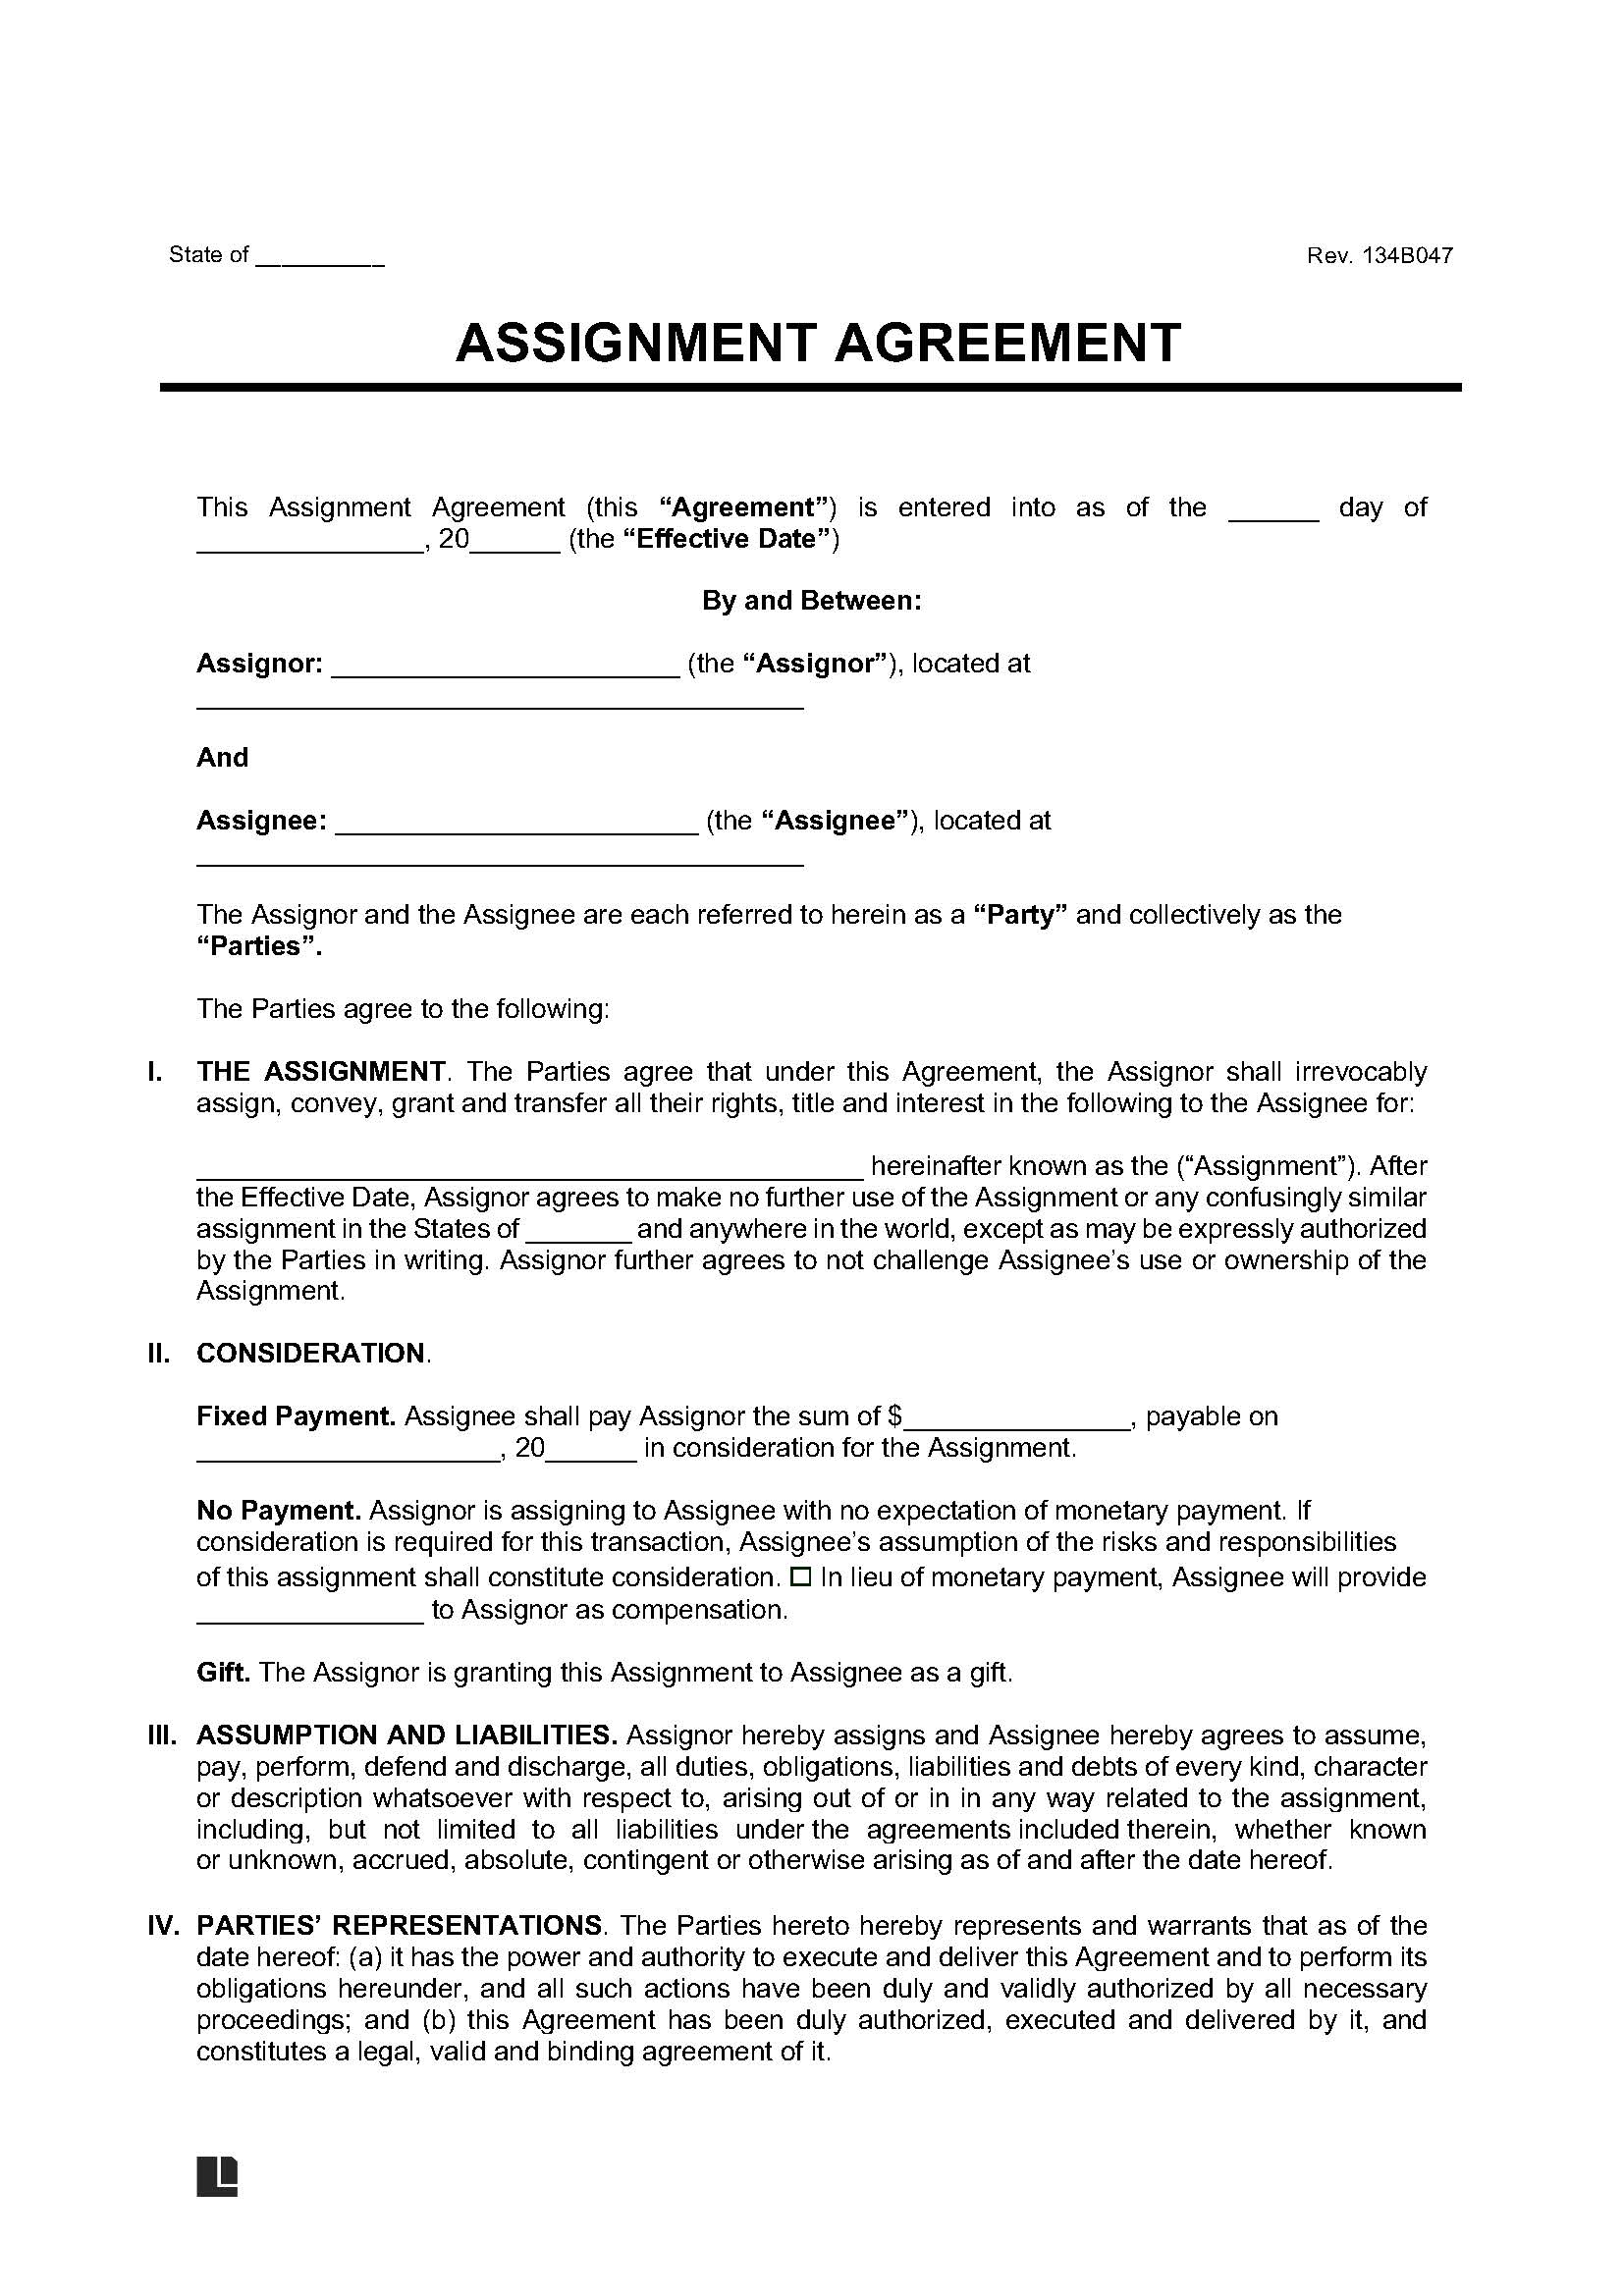 Assignment Agreement screenshot